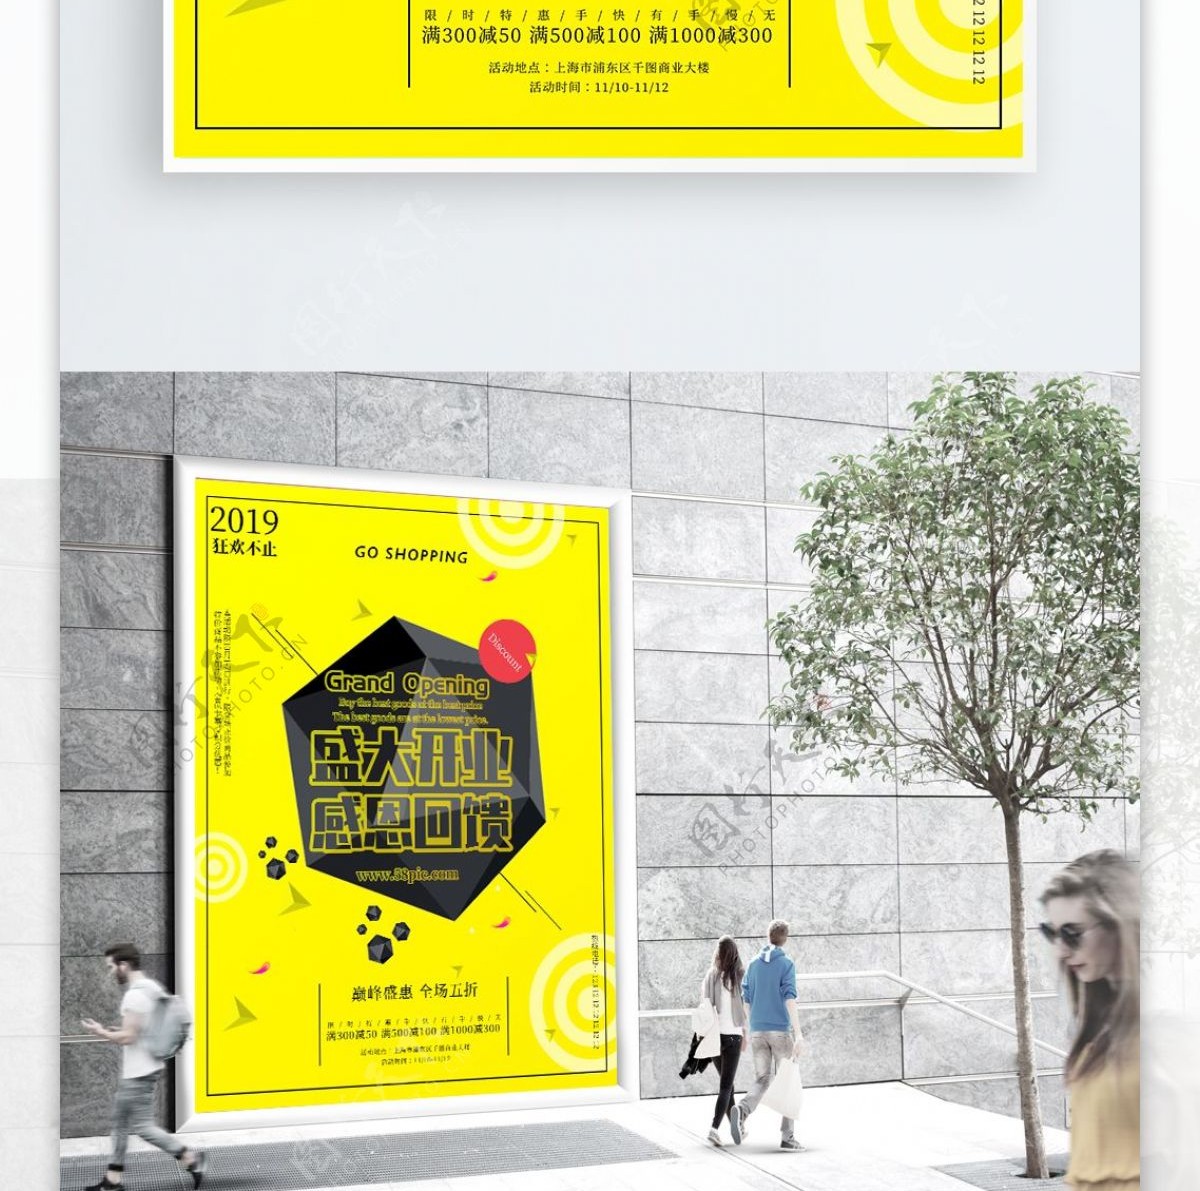 盛大开业抖h黄色系列海报设计